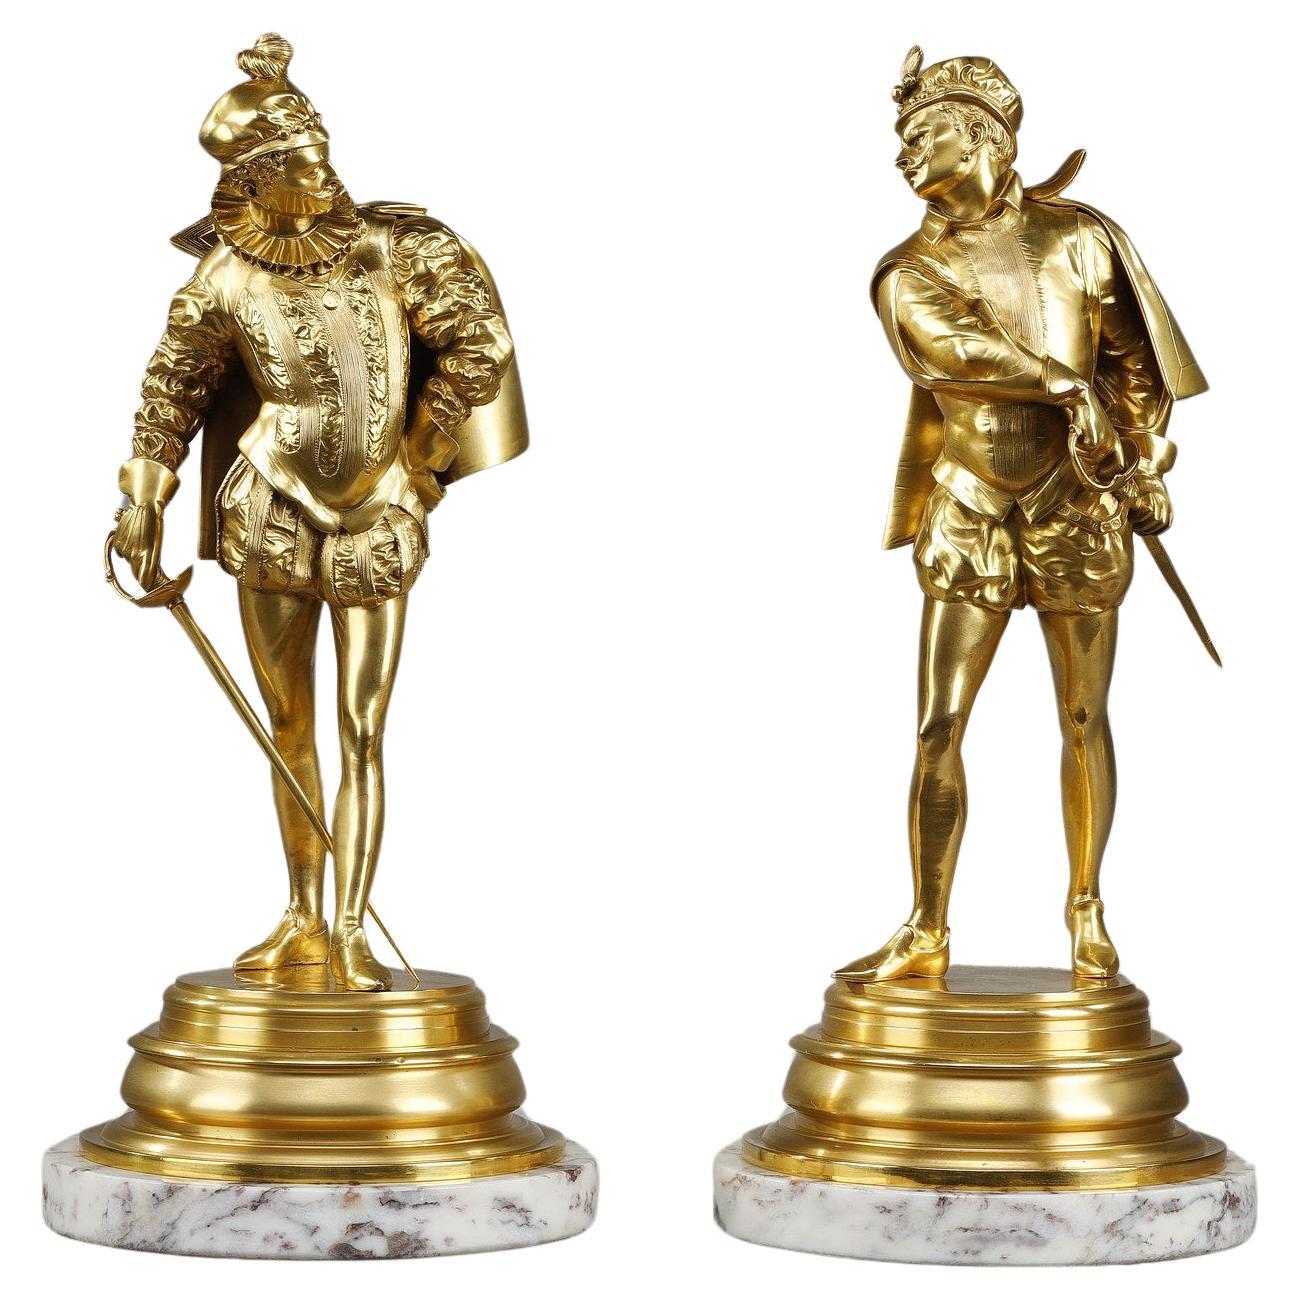 Two bronze sculptures by Auguste Louis Lalouette "Les Duellistes"